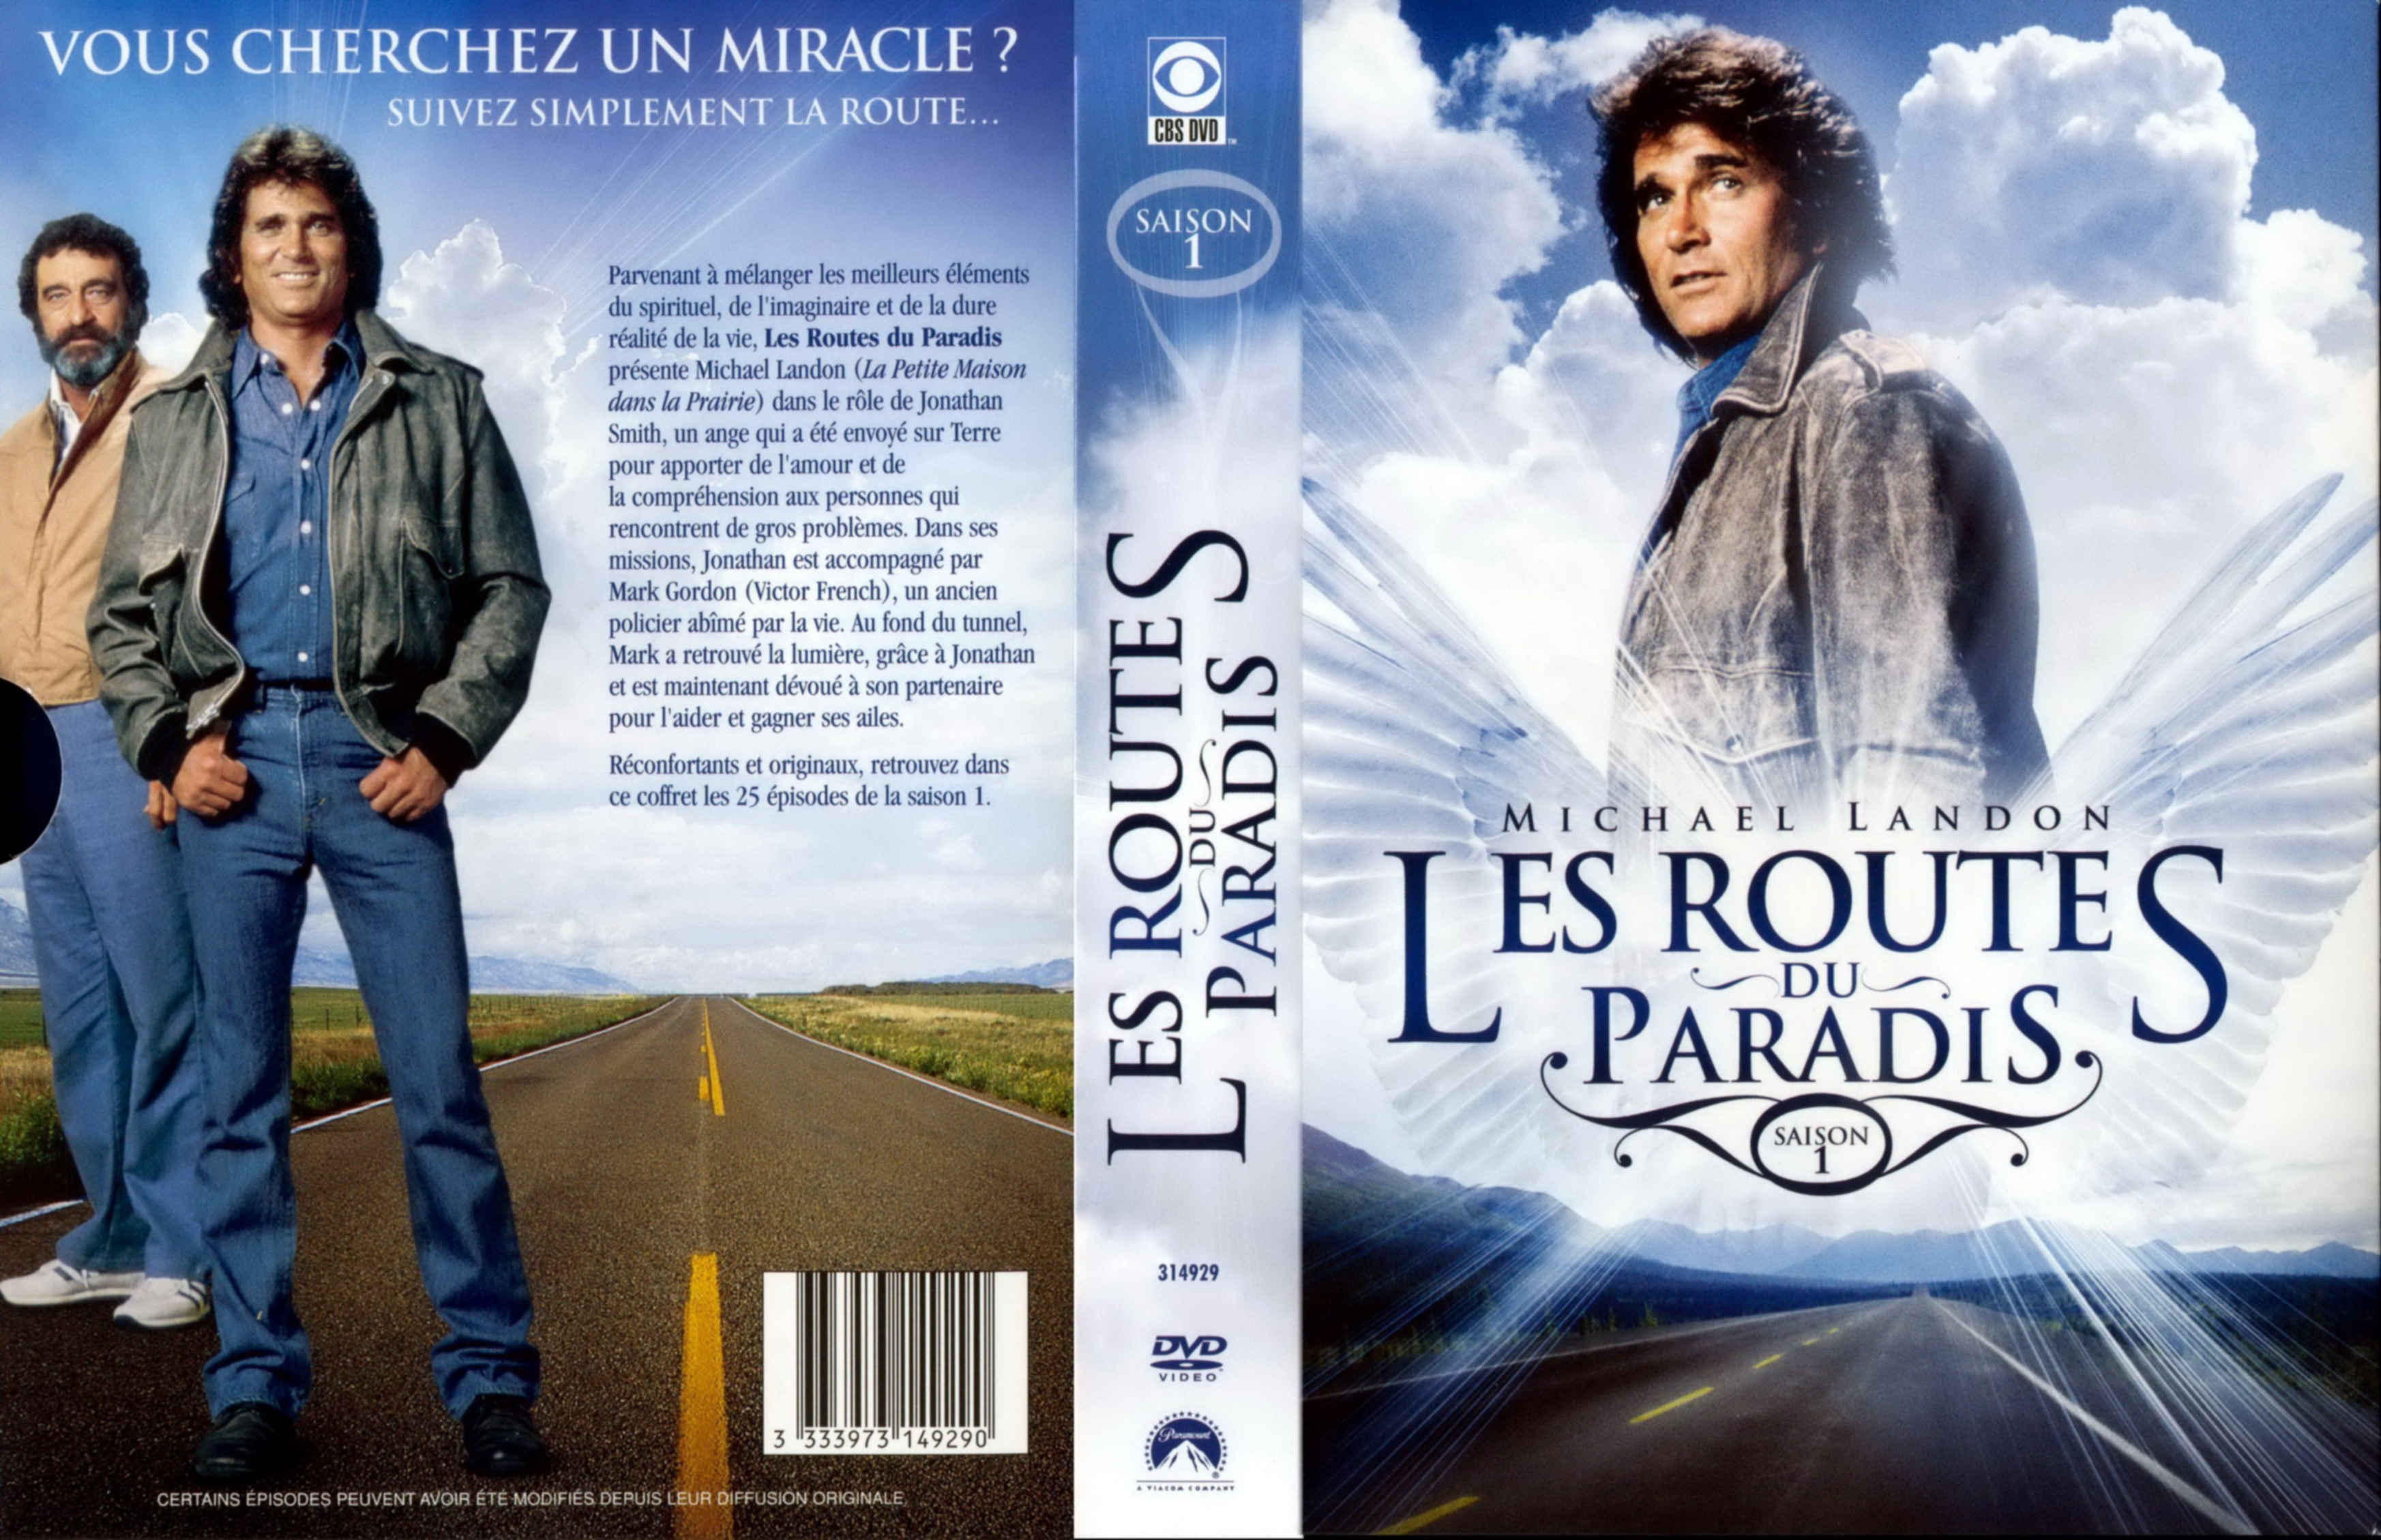 HASARDS DE ROUTE (DVD)